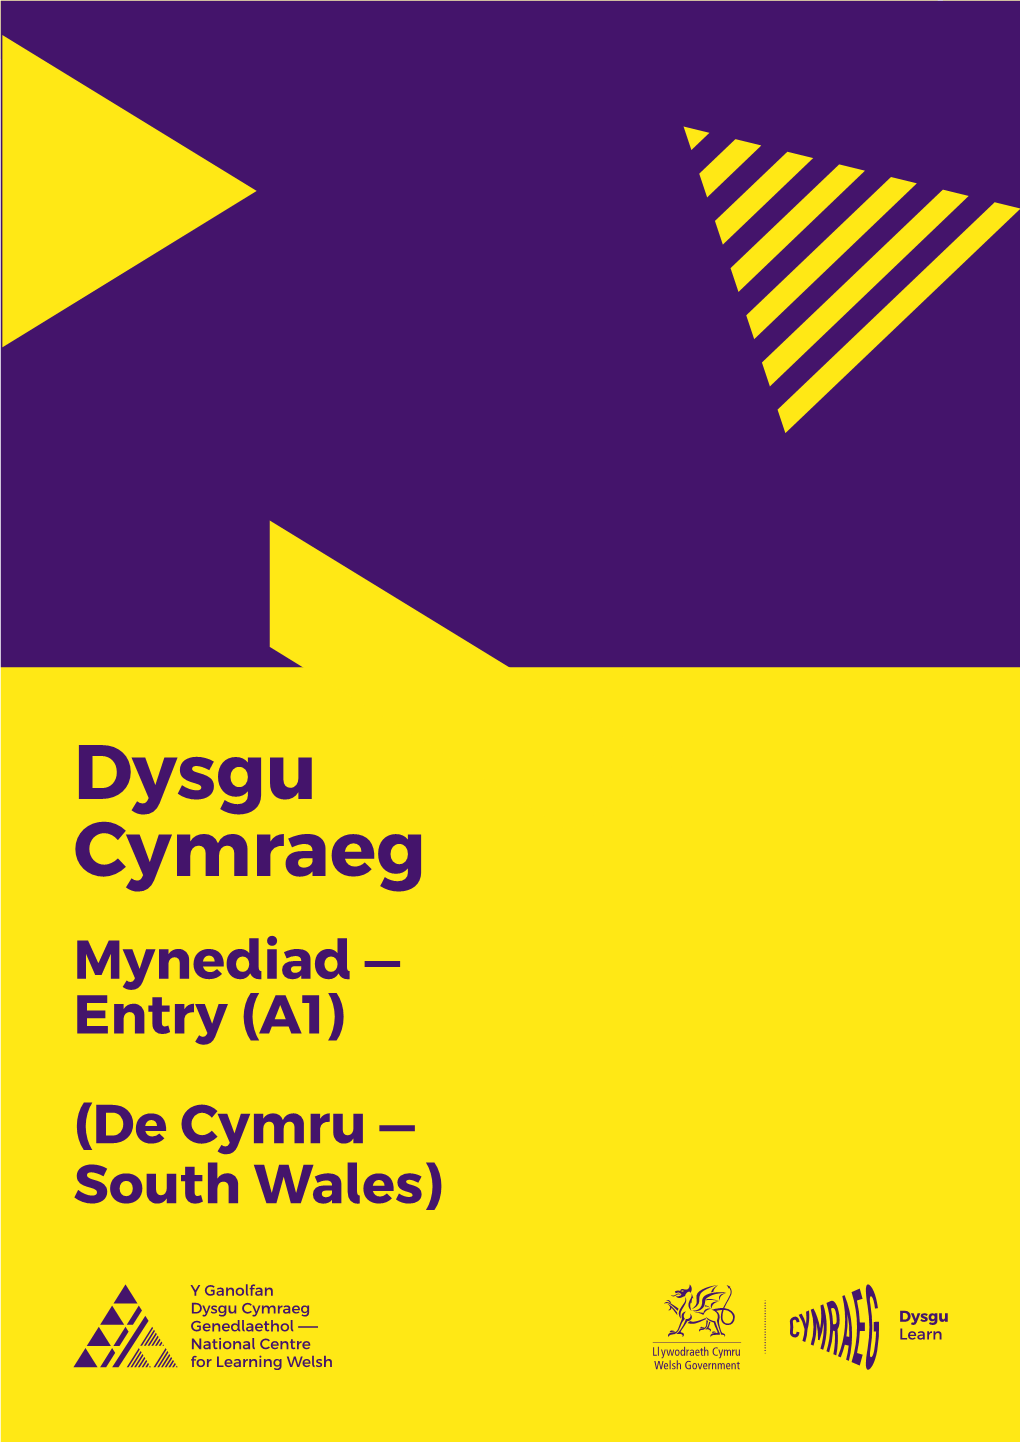 Mynediad — Entry (A1) (De Cymru — South Wales) 2